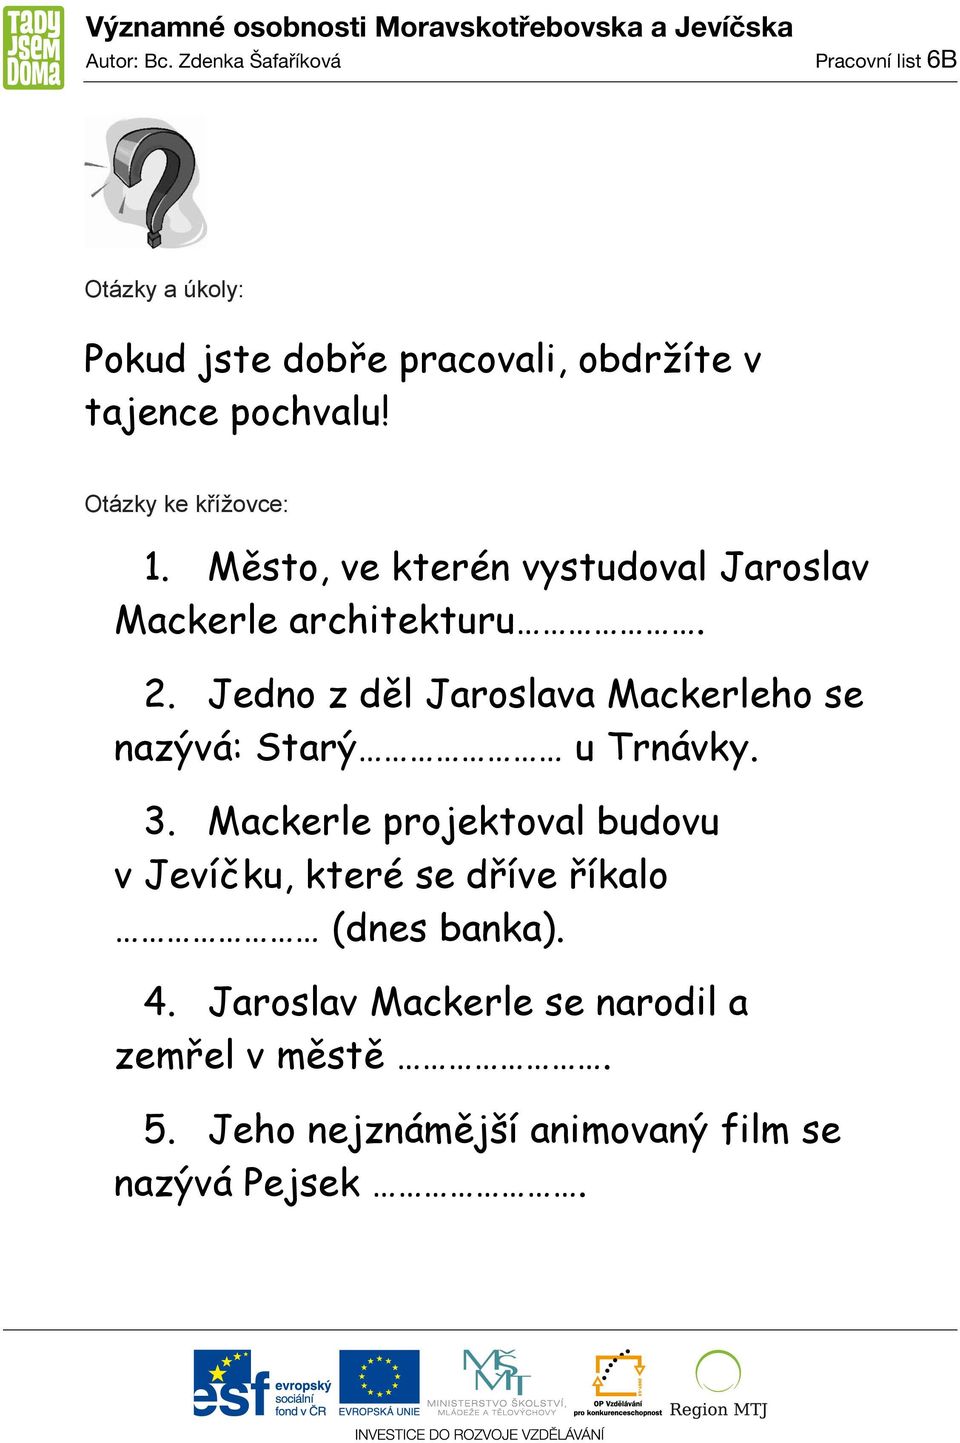 Jedno z děl Jaroslava Mackerleho se nazývá: Starý u Trnávky. 3.